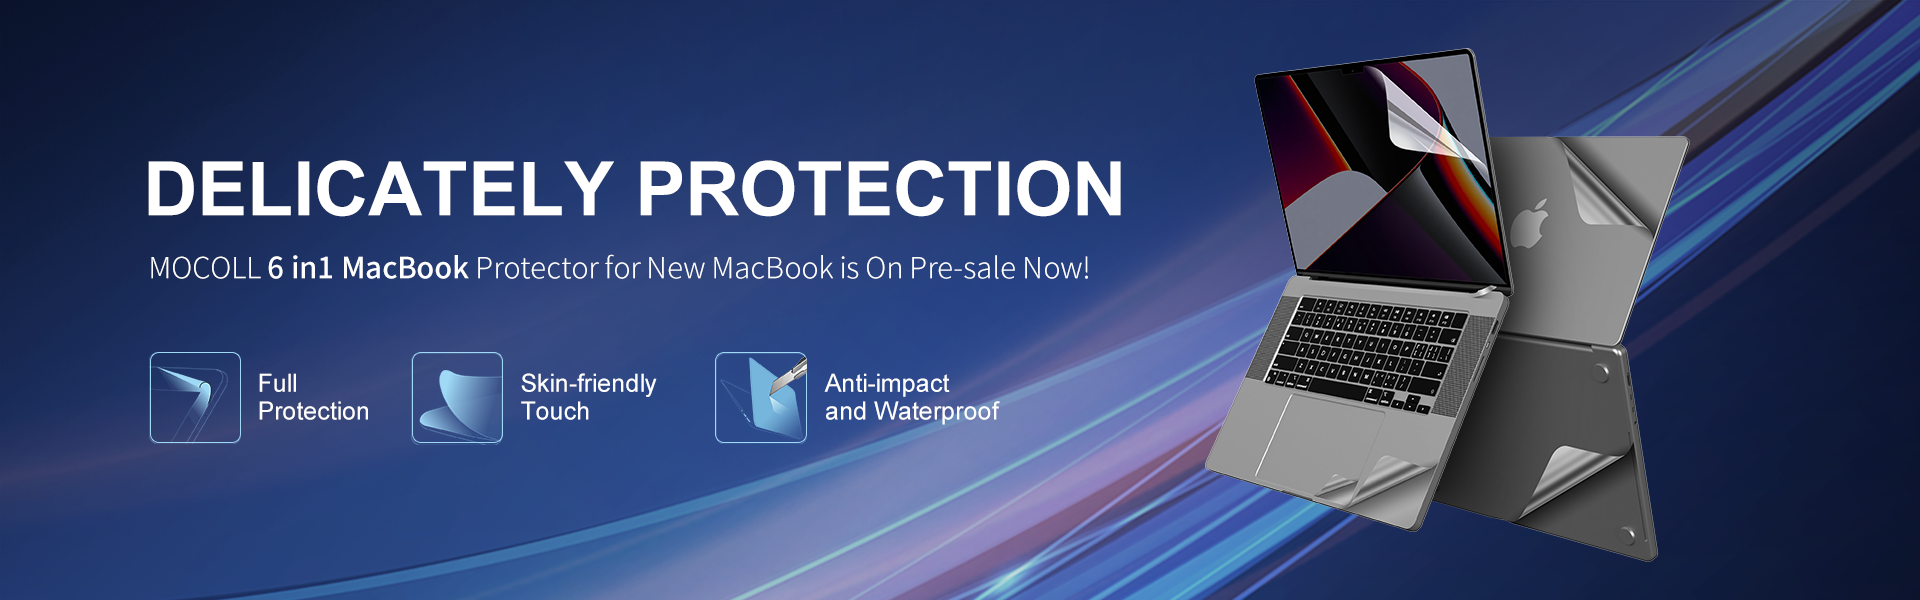 حامي Macbook الجديد 6 في 1 معروض للبيع الآن!